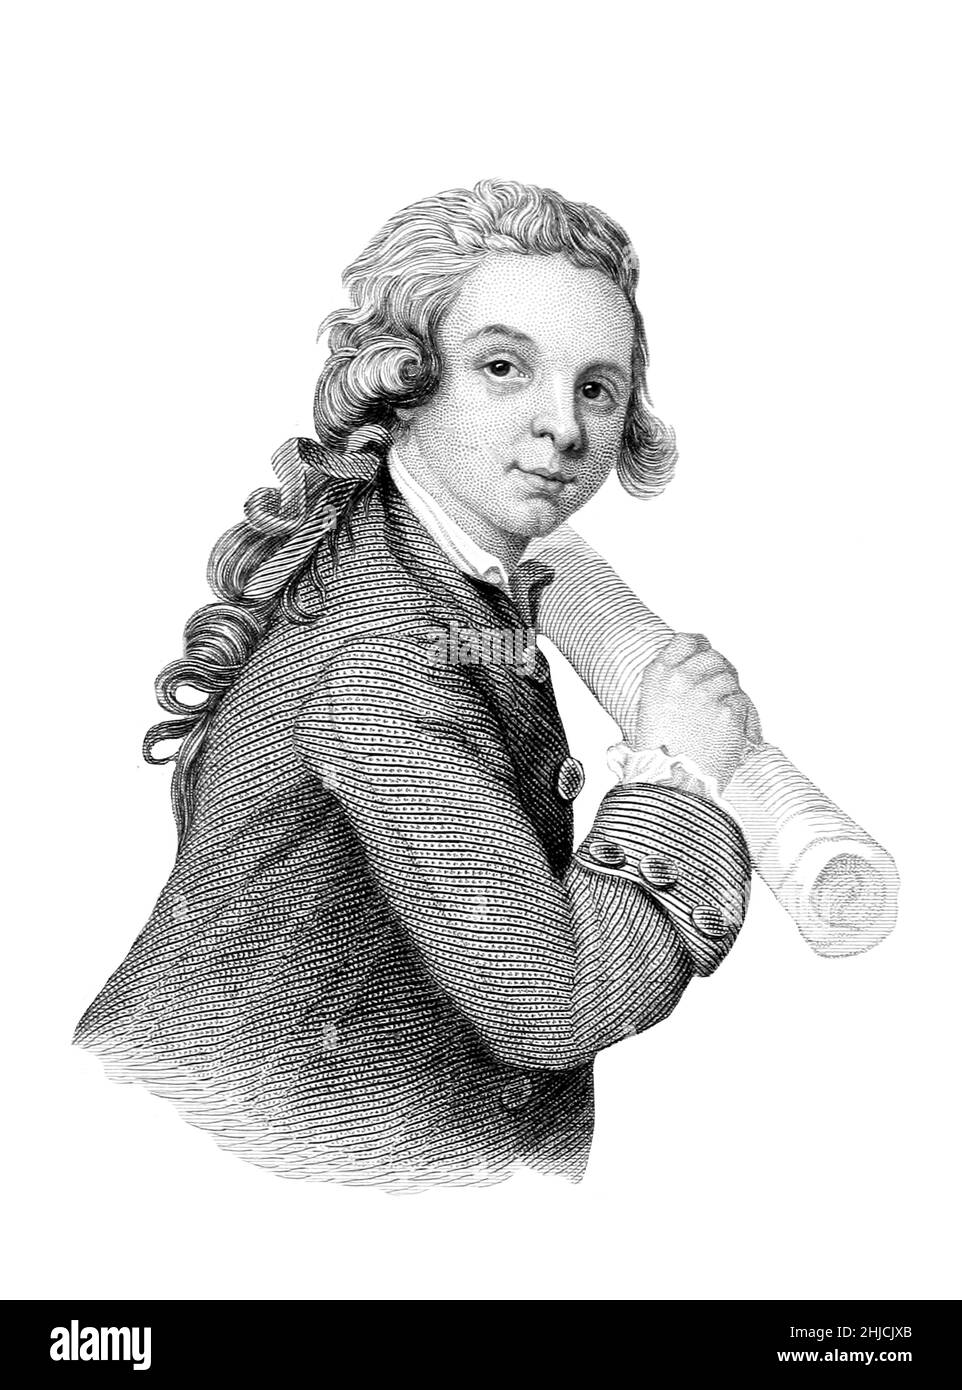 Wolfgang Amadeus Mozart 1756-1791) était un enfant prodige et compositeur autrichien de l'époque classique.Illustration des lettres de Wolfgang Amadeus Mozart, 1866. Banque D'Images